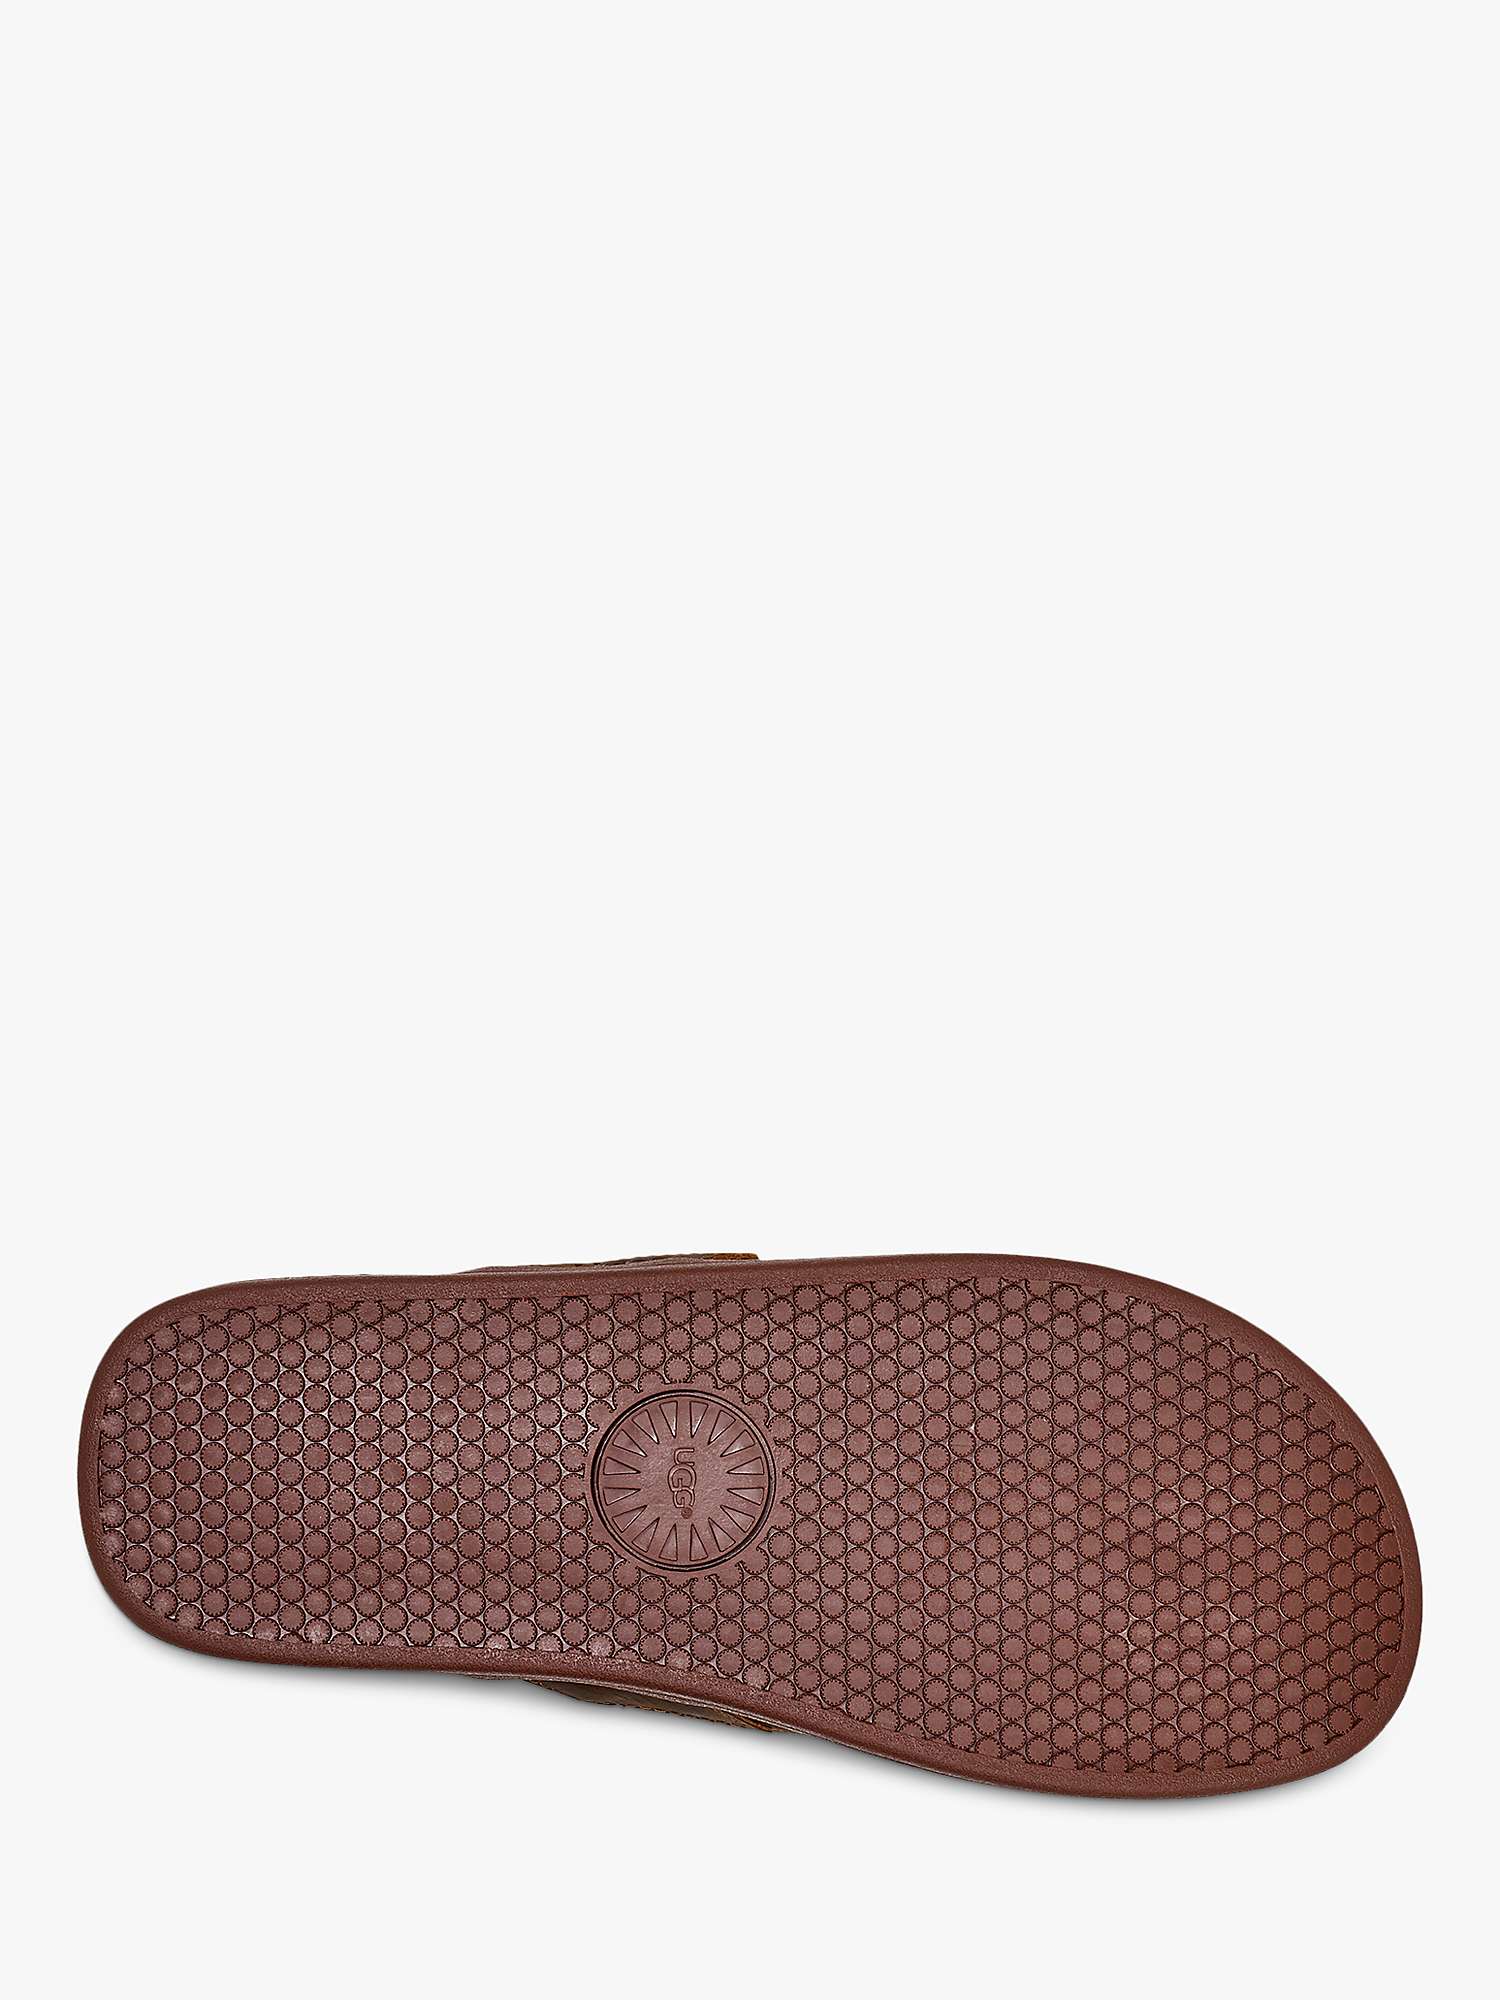 Buy UGG Seaside Leather Flip Flops Online at johnlewis.com